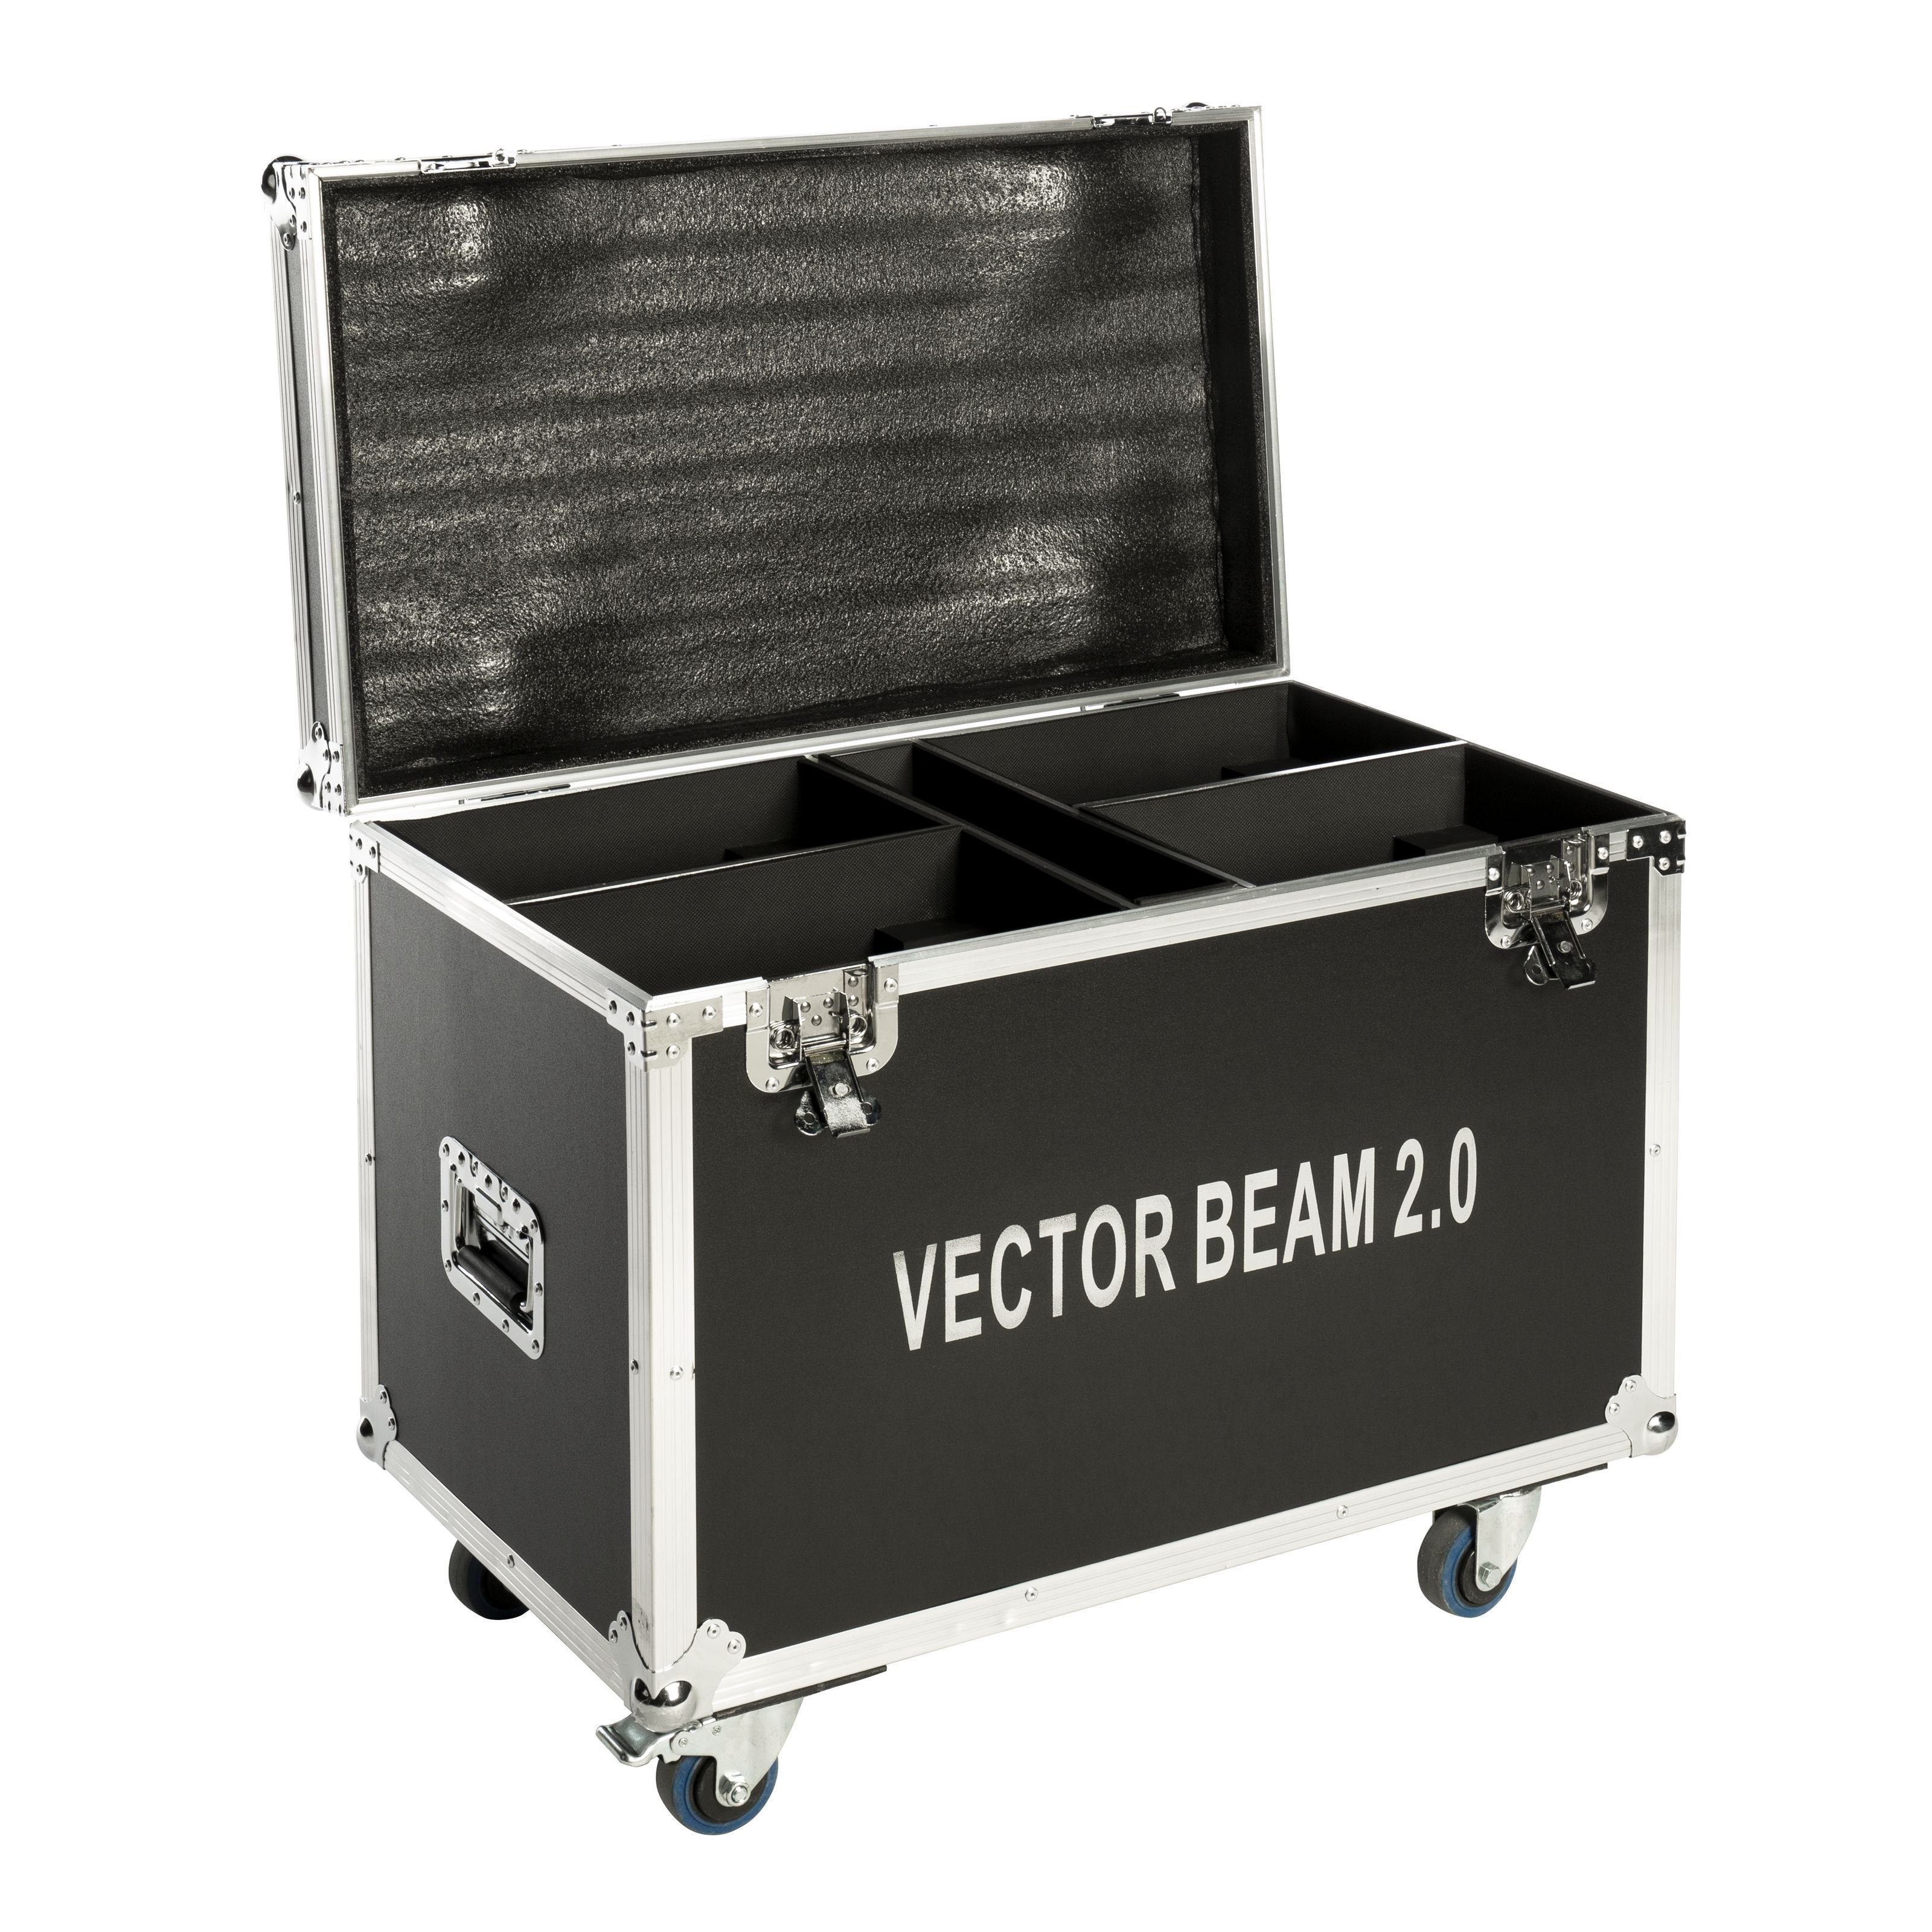 TOUR Discolicht, VECTOR Beam 4x CASE lightmaXX 2.0